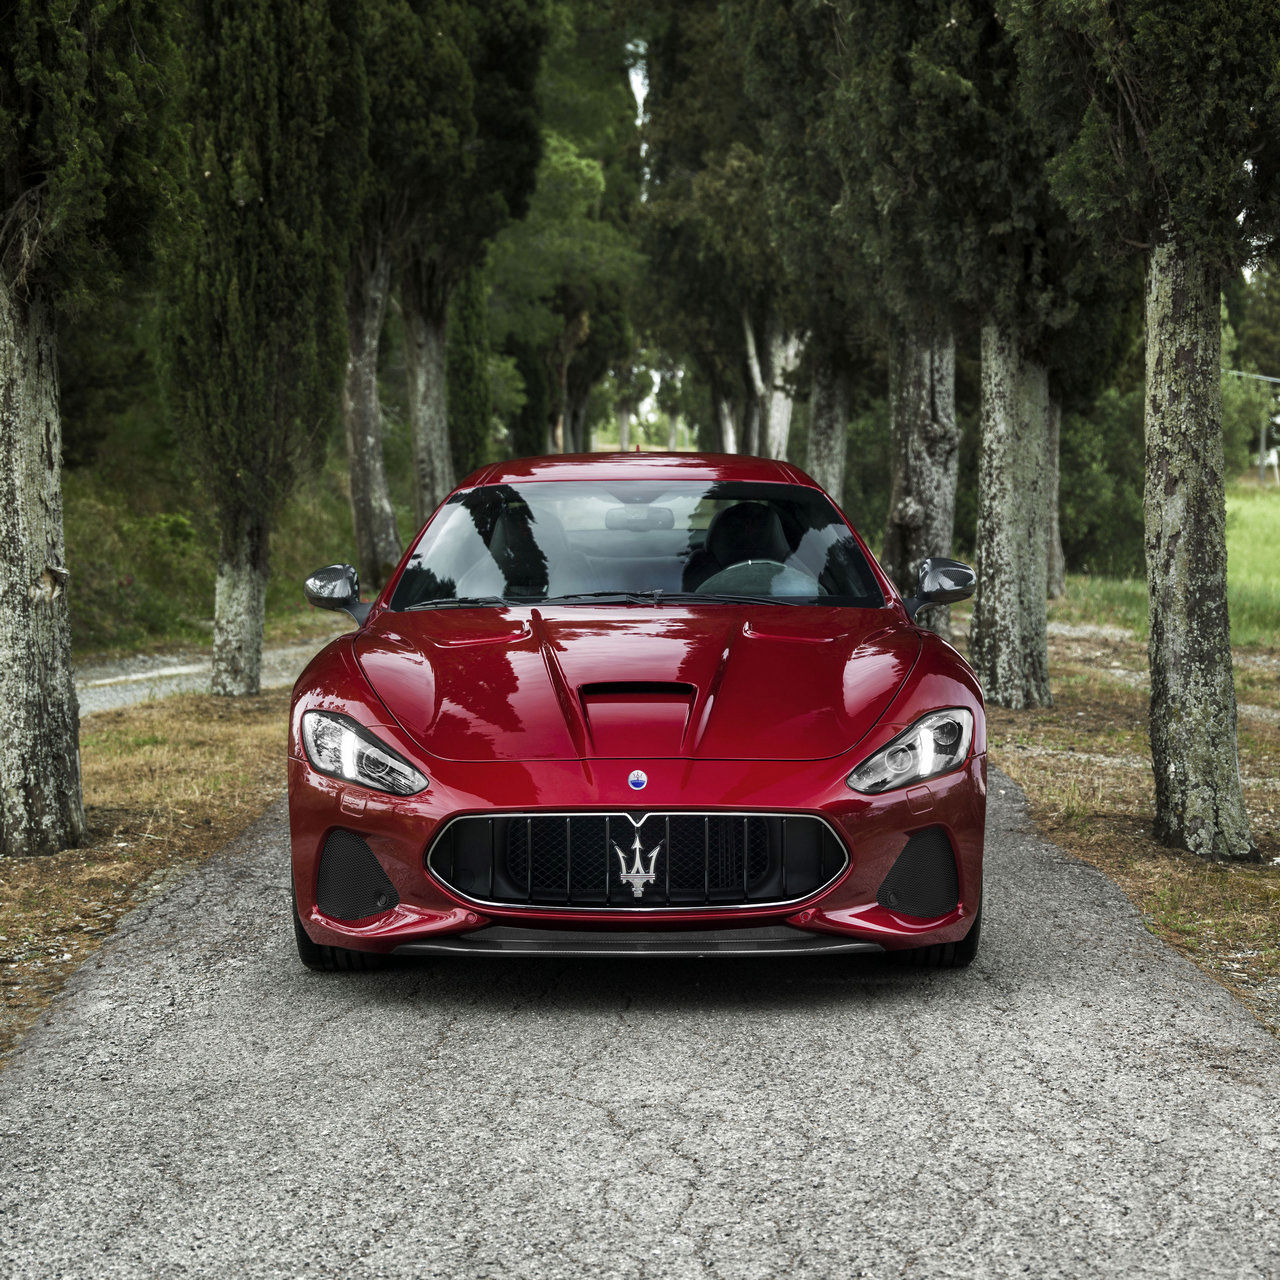 Maserati GranTurismo, vista frontale - Dettagli dei fari e del logo tridente